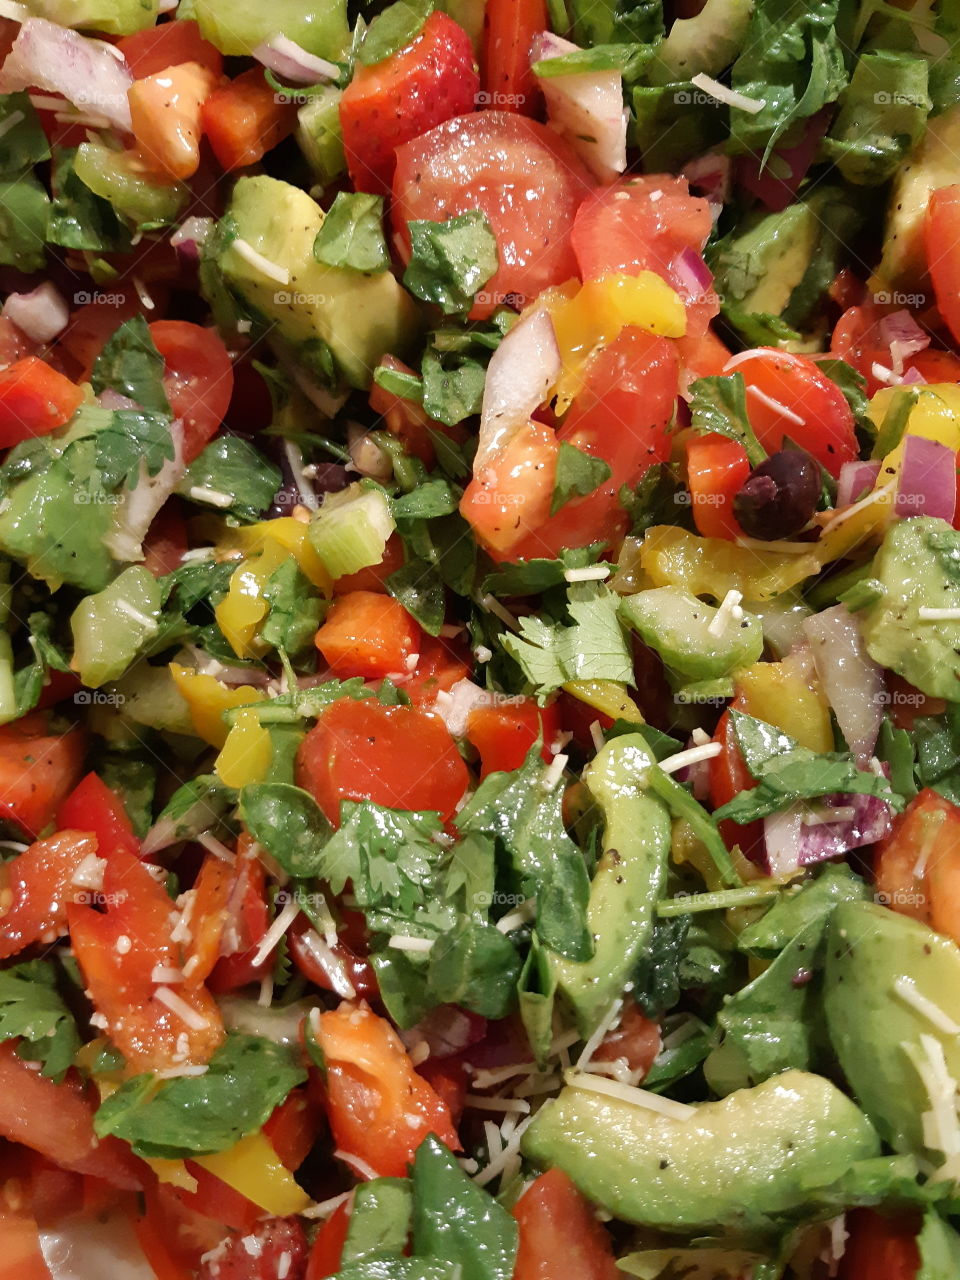 Those salads! 😍